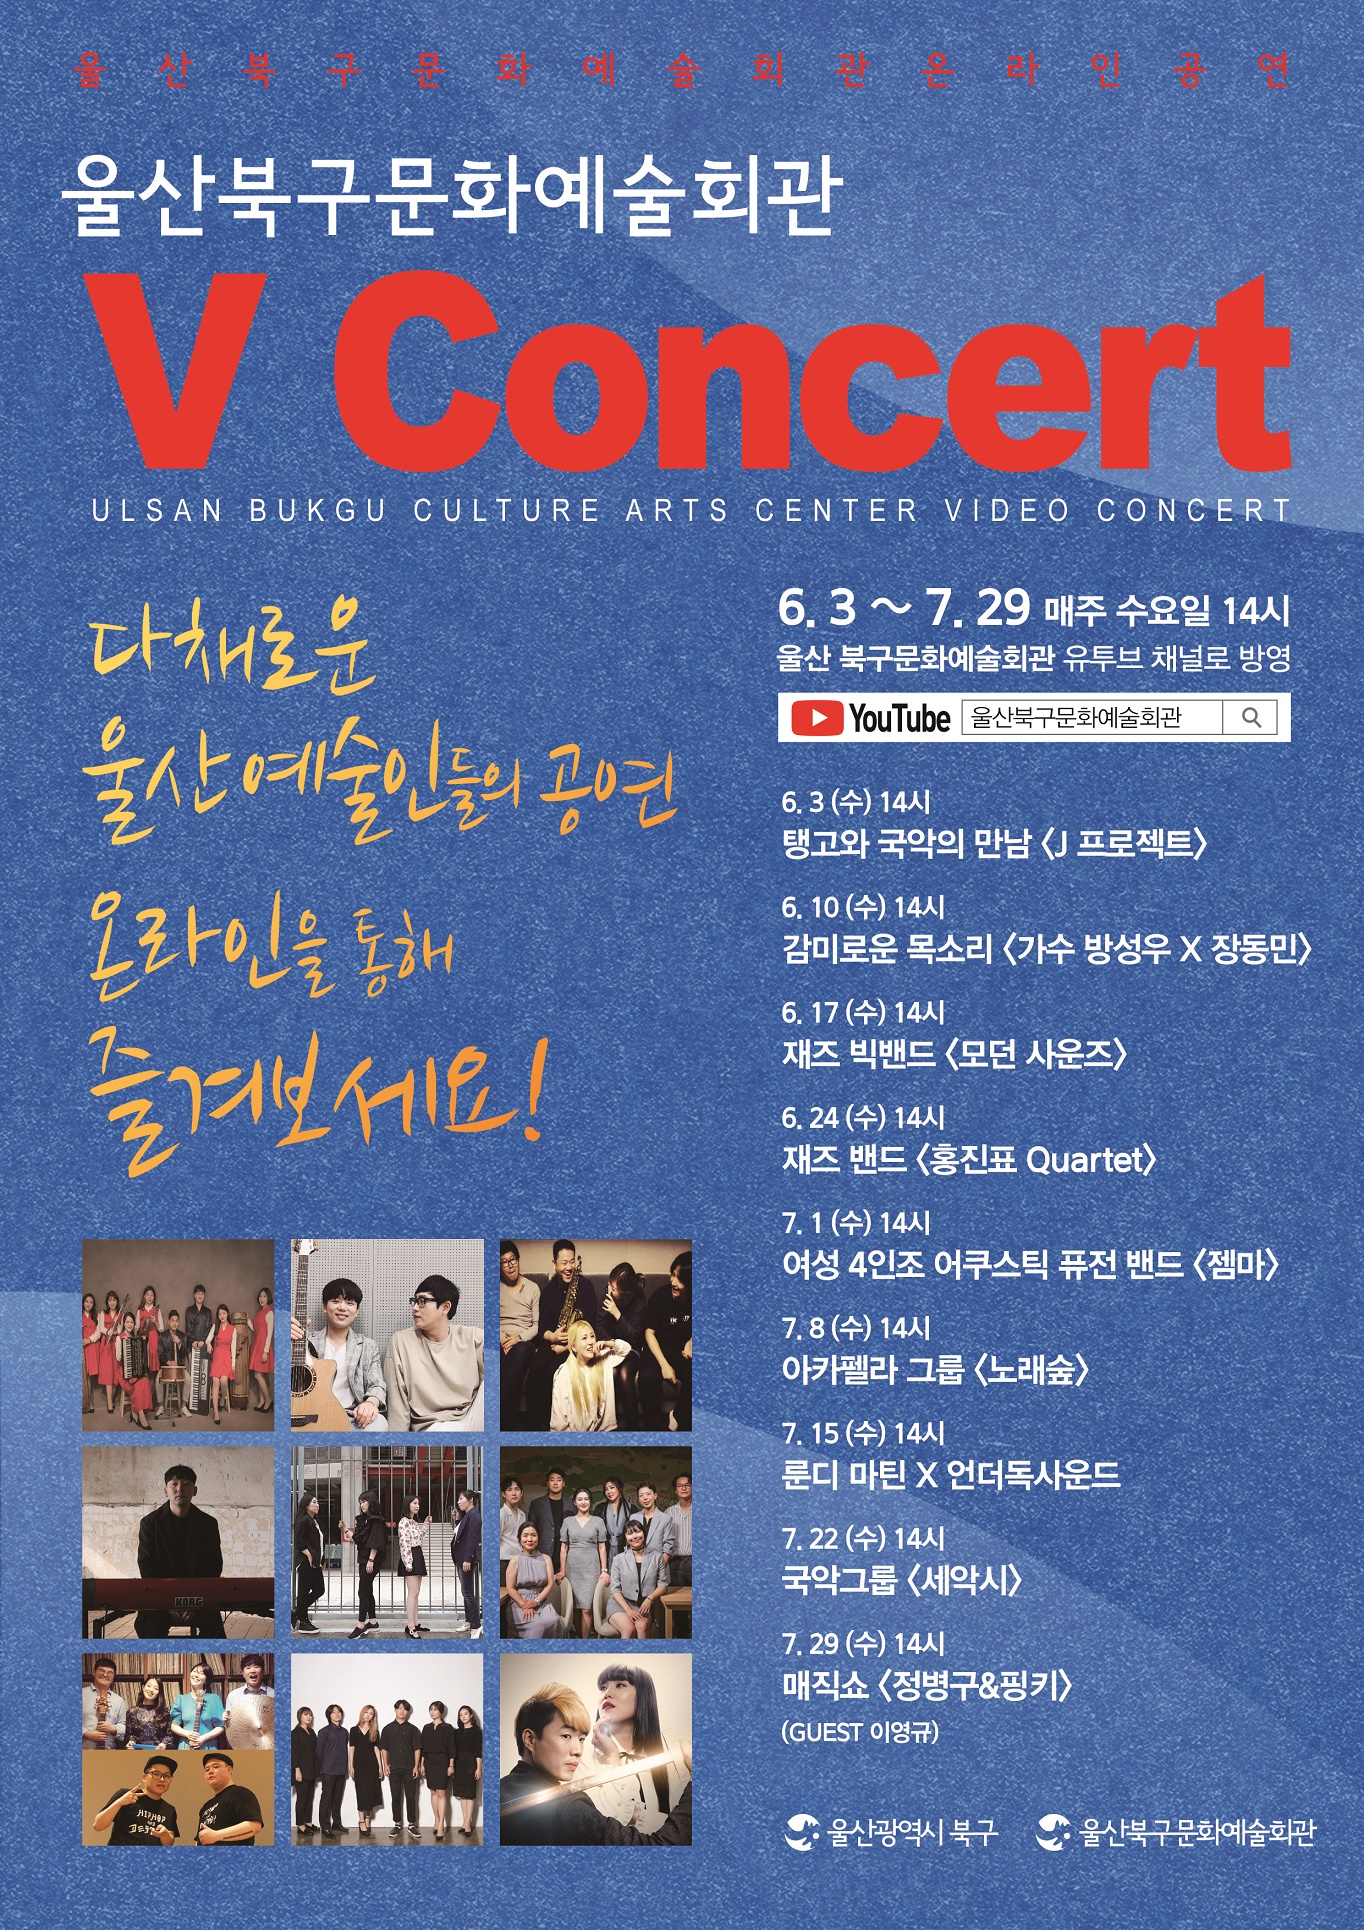 북구문화예술회관 온라인 공연 V Concert